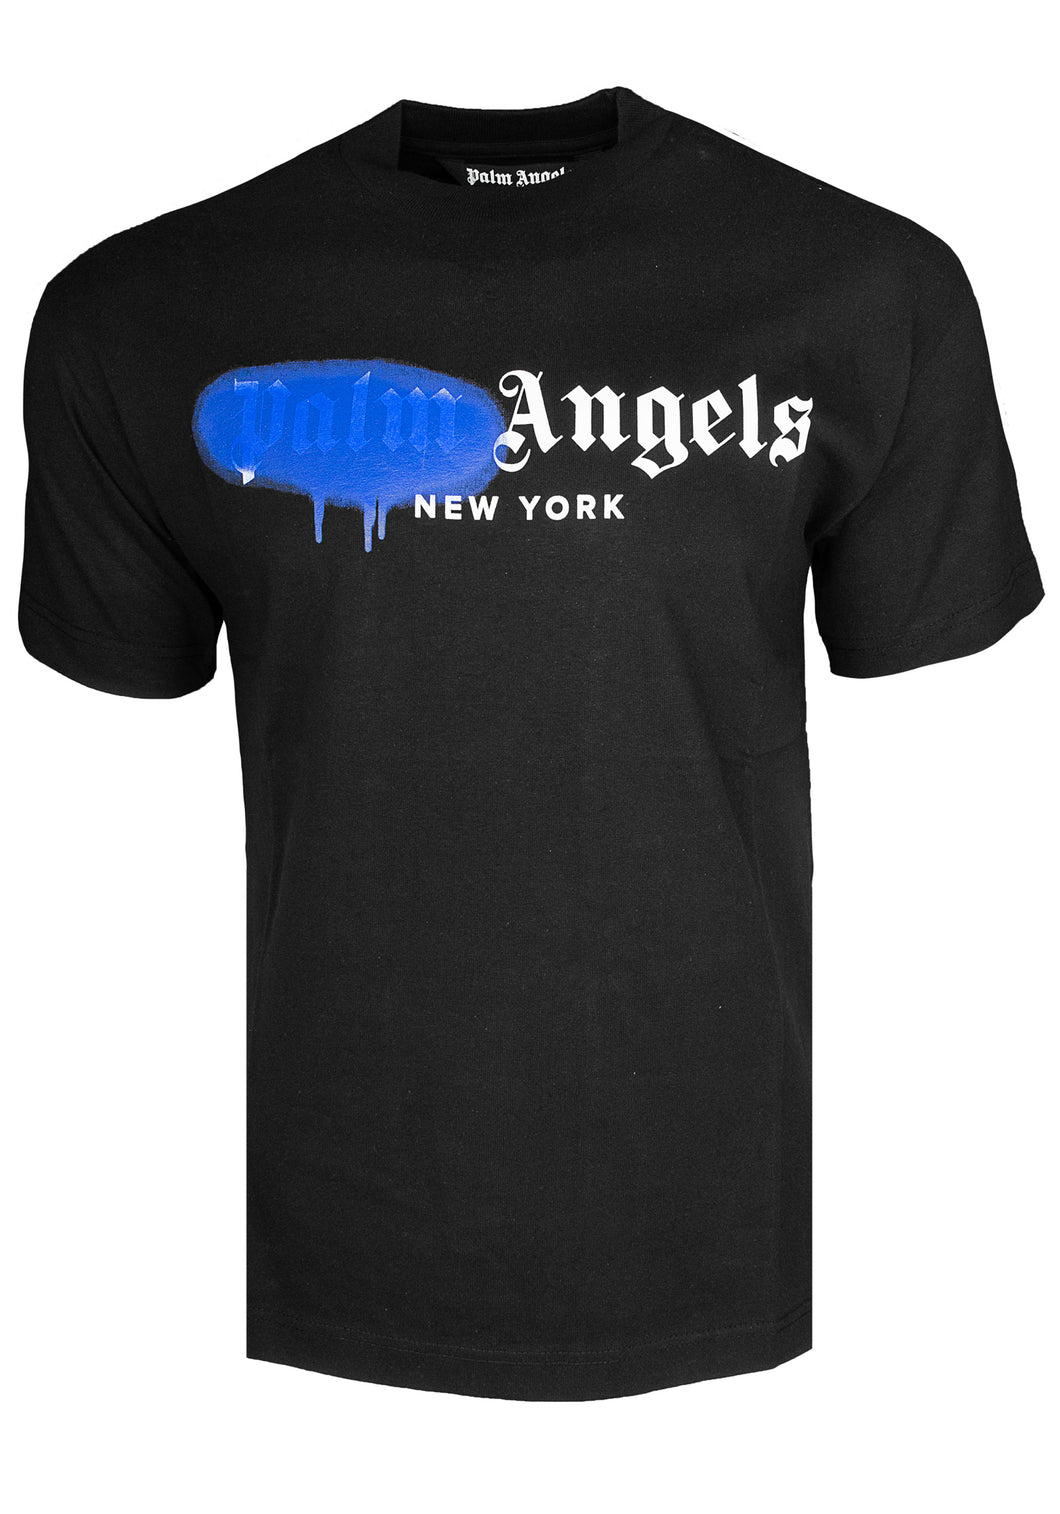 Palm Angels Herren T-Shirt | Painted New York Shirt